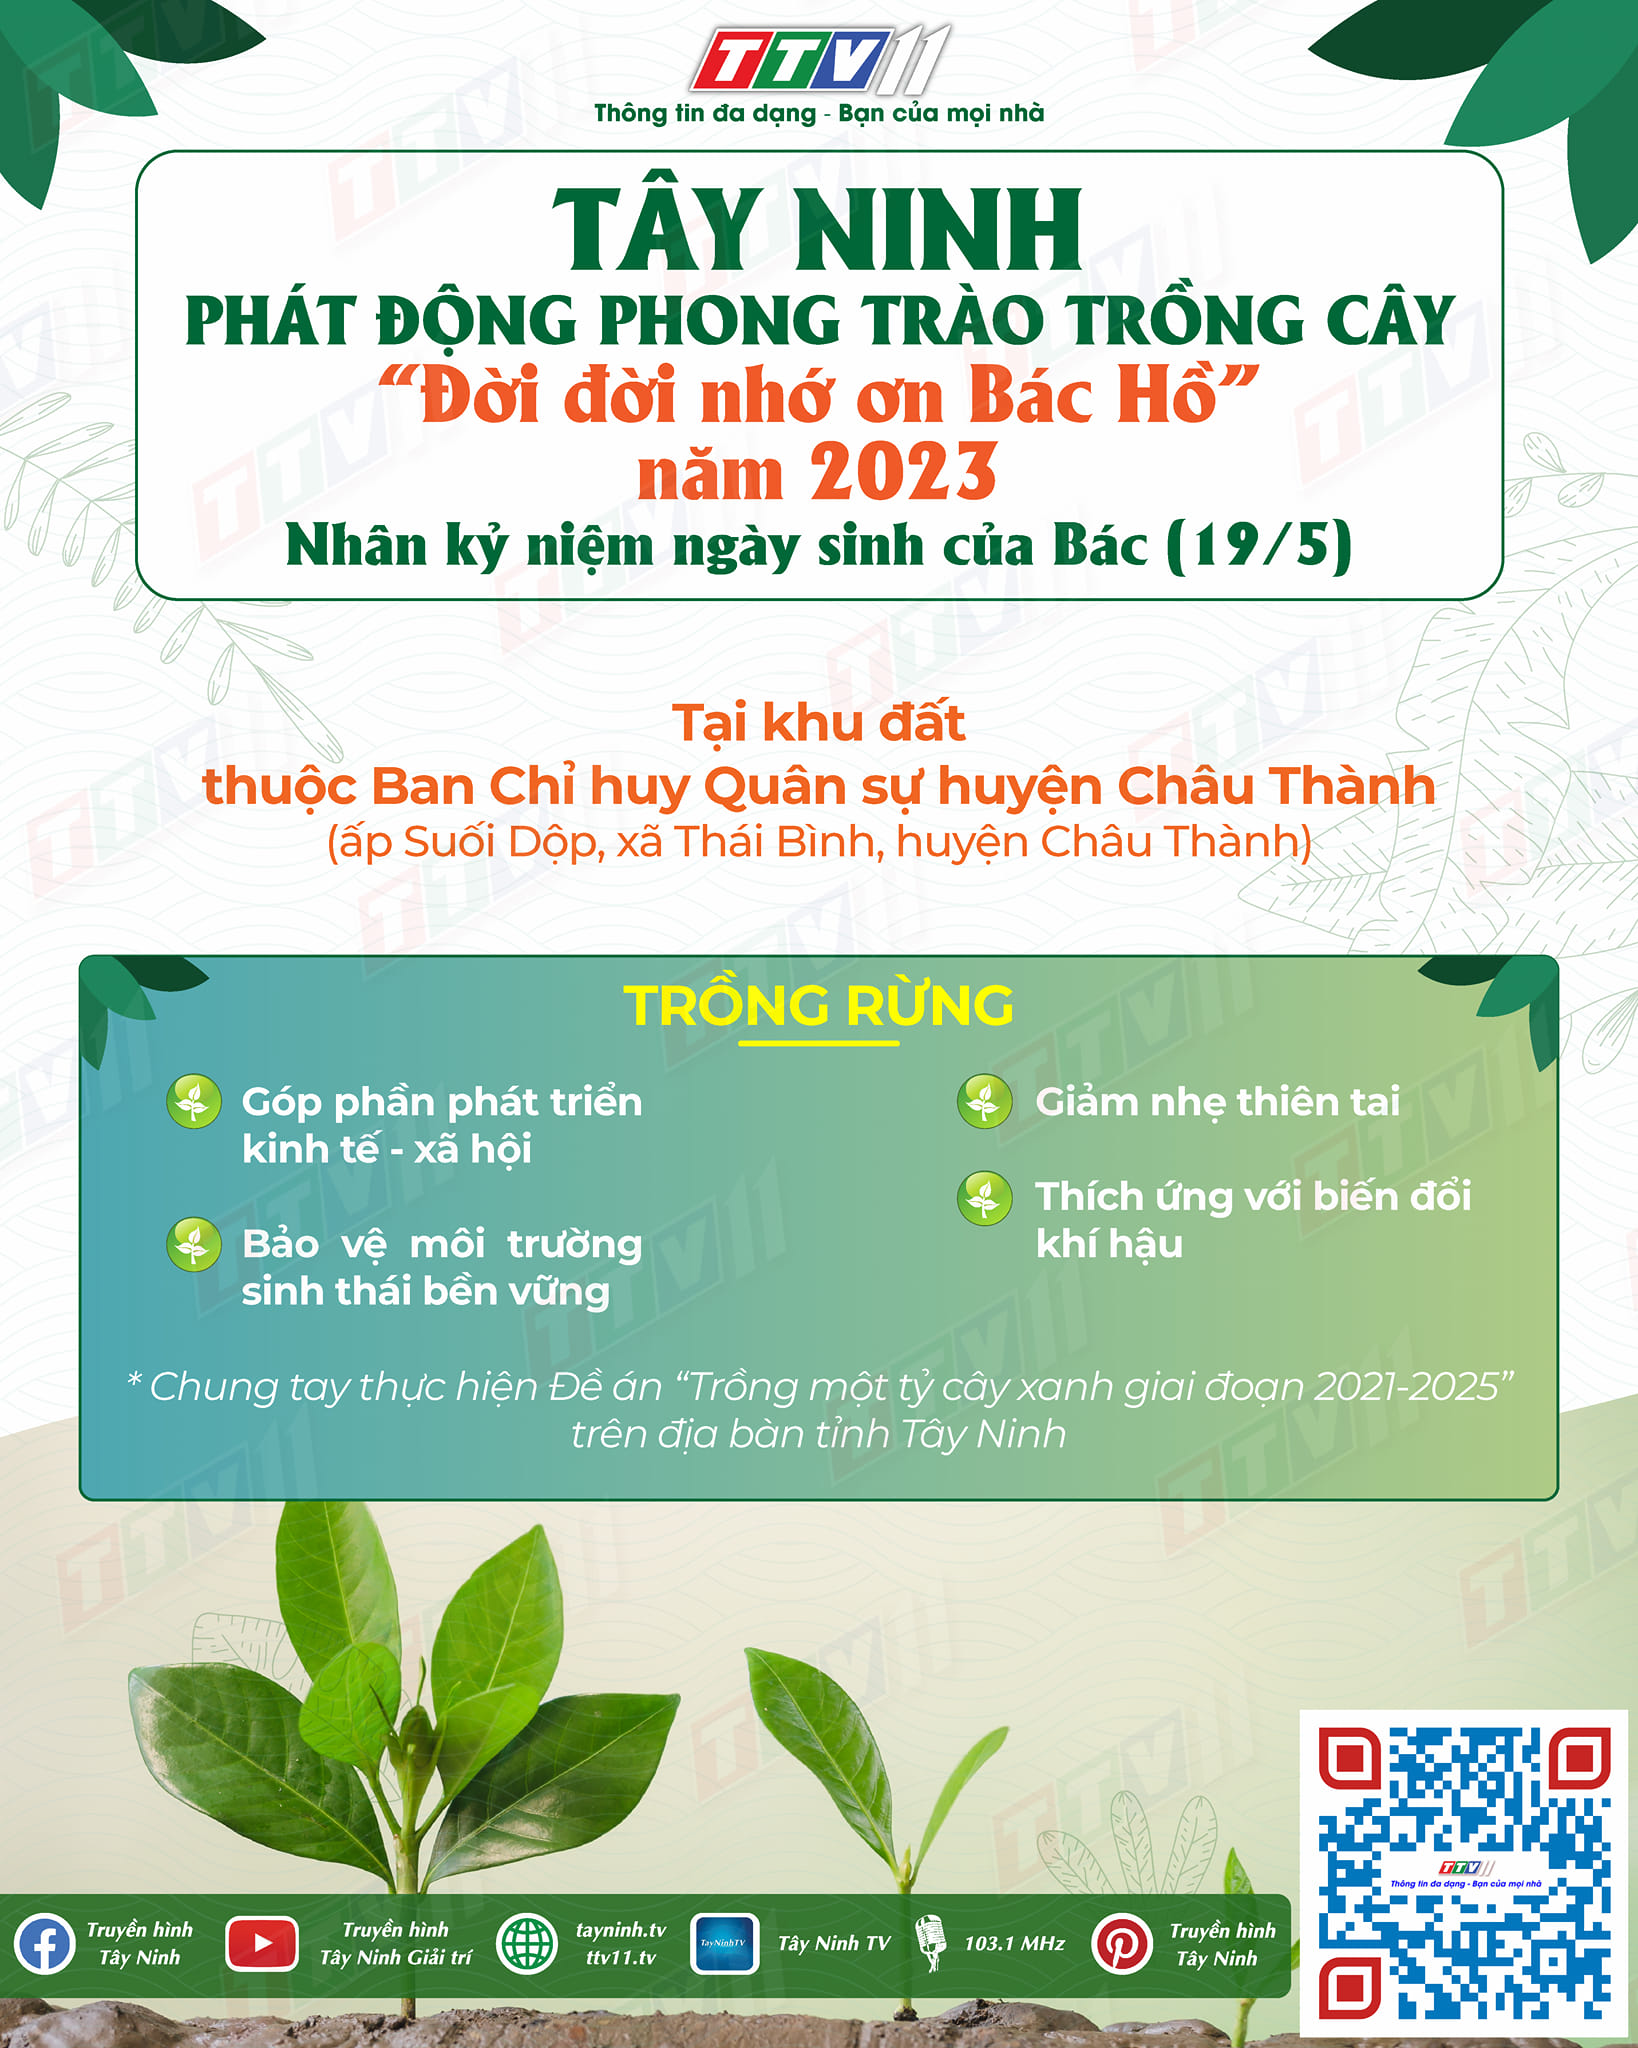 Tây Ninh hưởng ứng phong trào trồng cây “Đời đời nhớ ơn Bác Hồ” năm 2023 nhân kỷ niệm 133 năm ngày sinh của Bác (19/5/1890 – 19/5/2023).